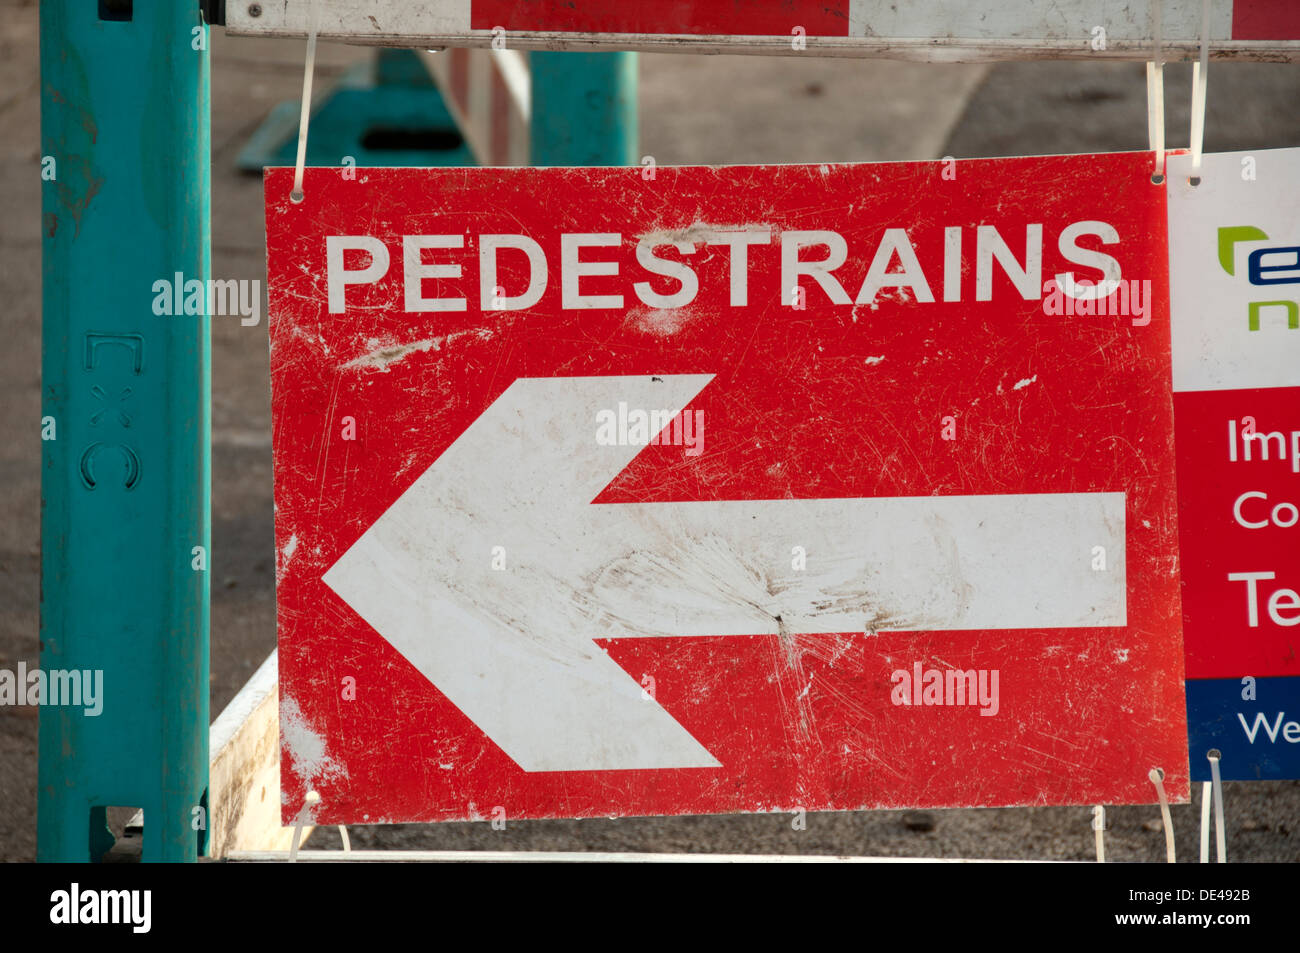 L'orthographe incorrecte sur une direction pour les piétons, de l'épeautre 'pedestrains'. Droylsden, Manchester, Angleterre, RU Banque D'Images